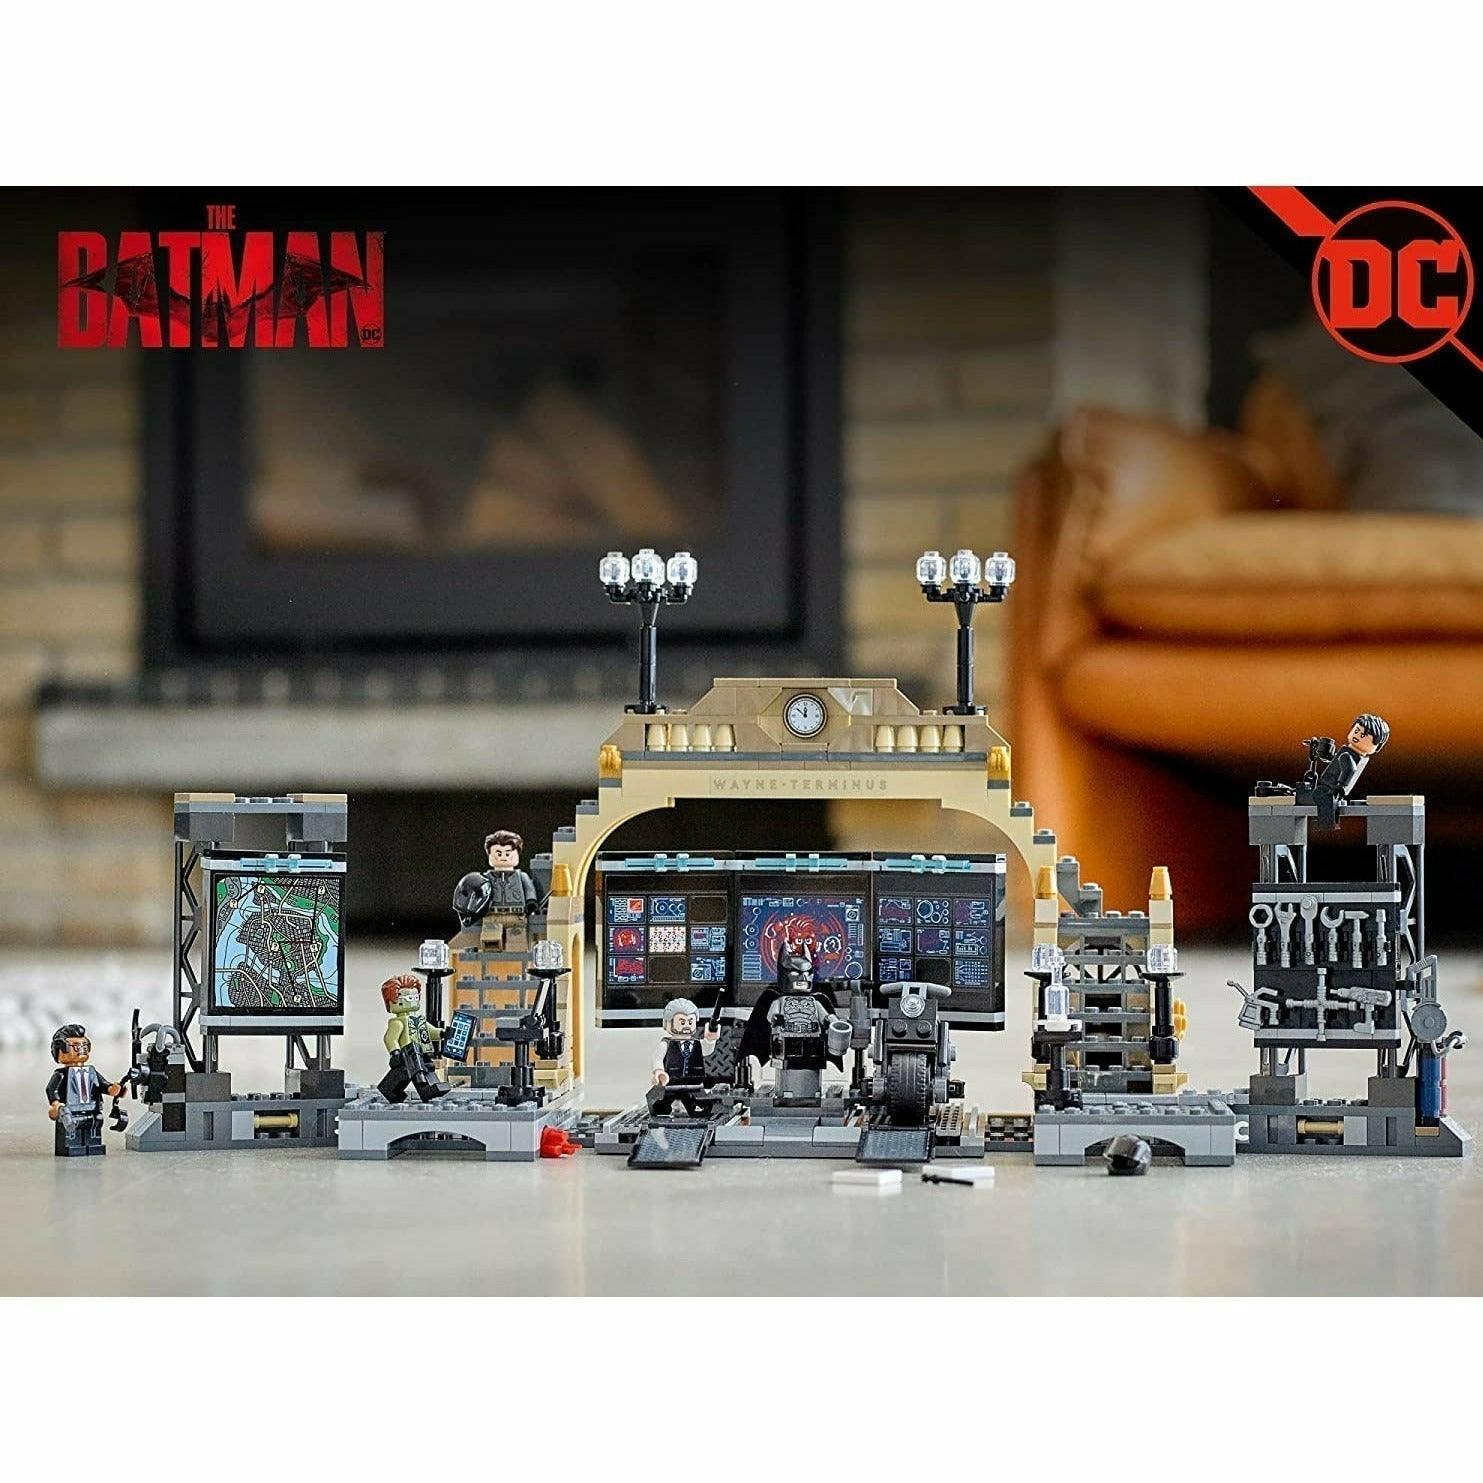 LEGO DC Batman Batcave: The Riddler Face-Off 76183 Building Kit; Cool Gotham City Batcave Toy for Kids Aged 8+ (581 Pieces) - BumbleToys - 18+, Action Figures, Avengers, Batman, Boys, DC, Figures, LEGO, OXE, Pre-Order